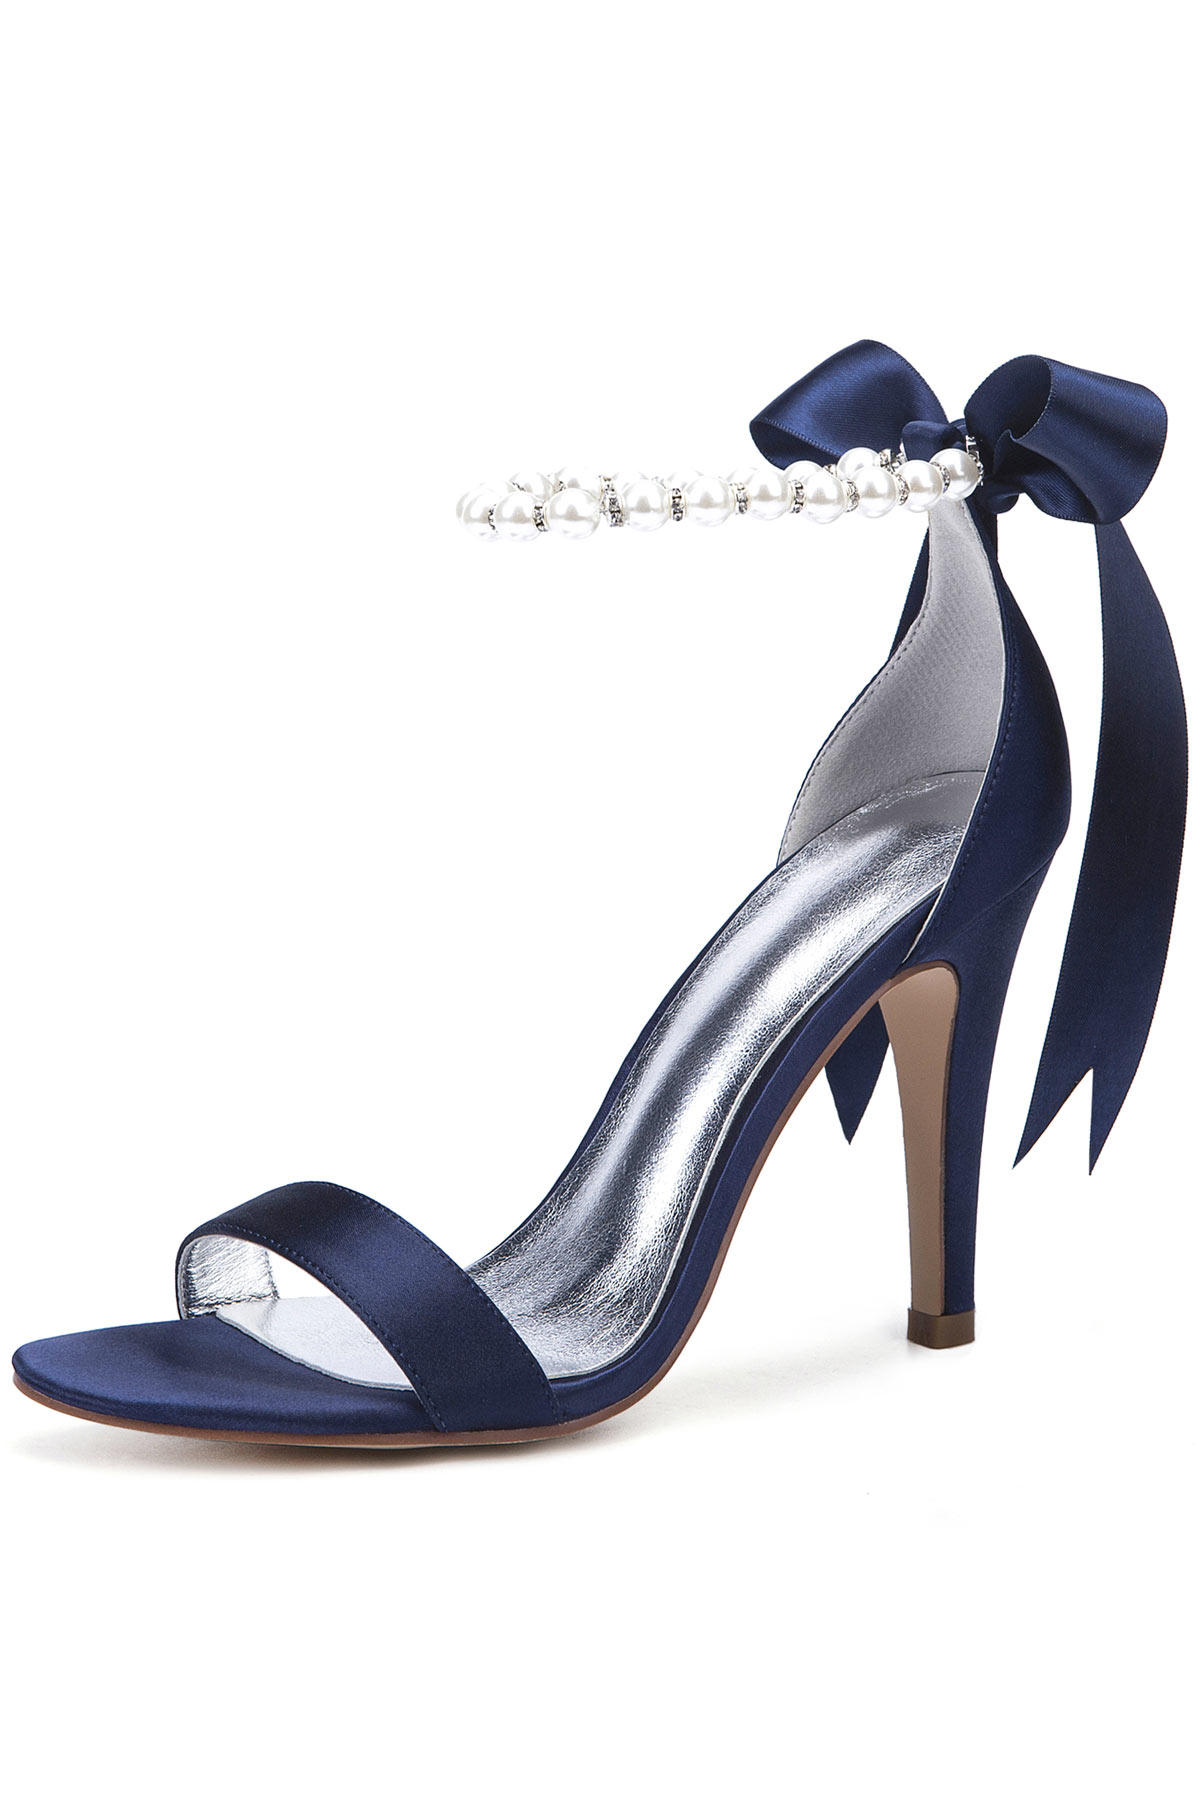 sandales à talon haut bleue avec bride embelli de perles et de noeud papillon